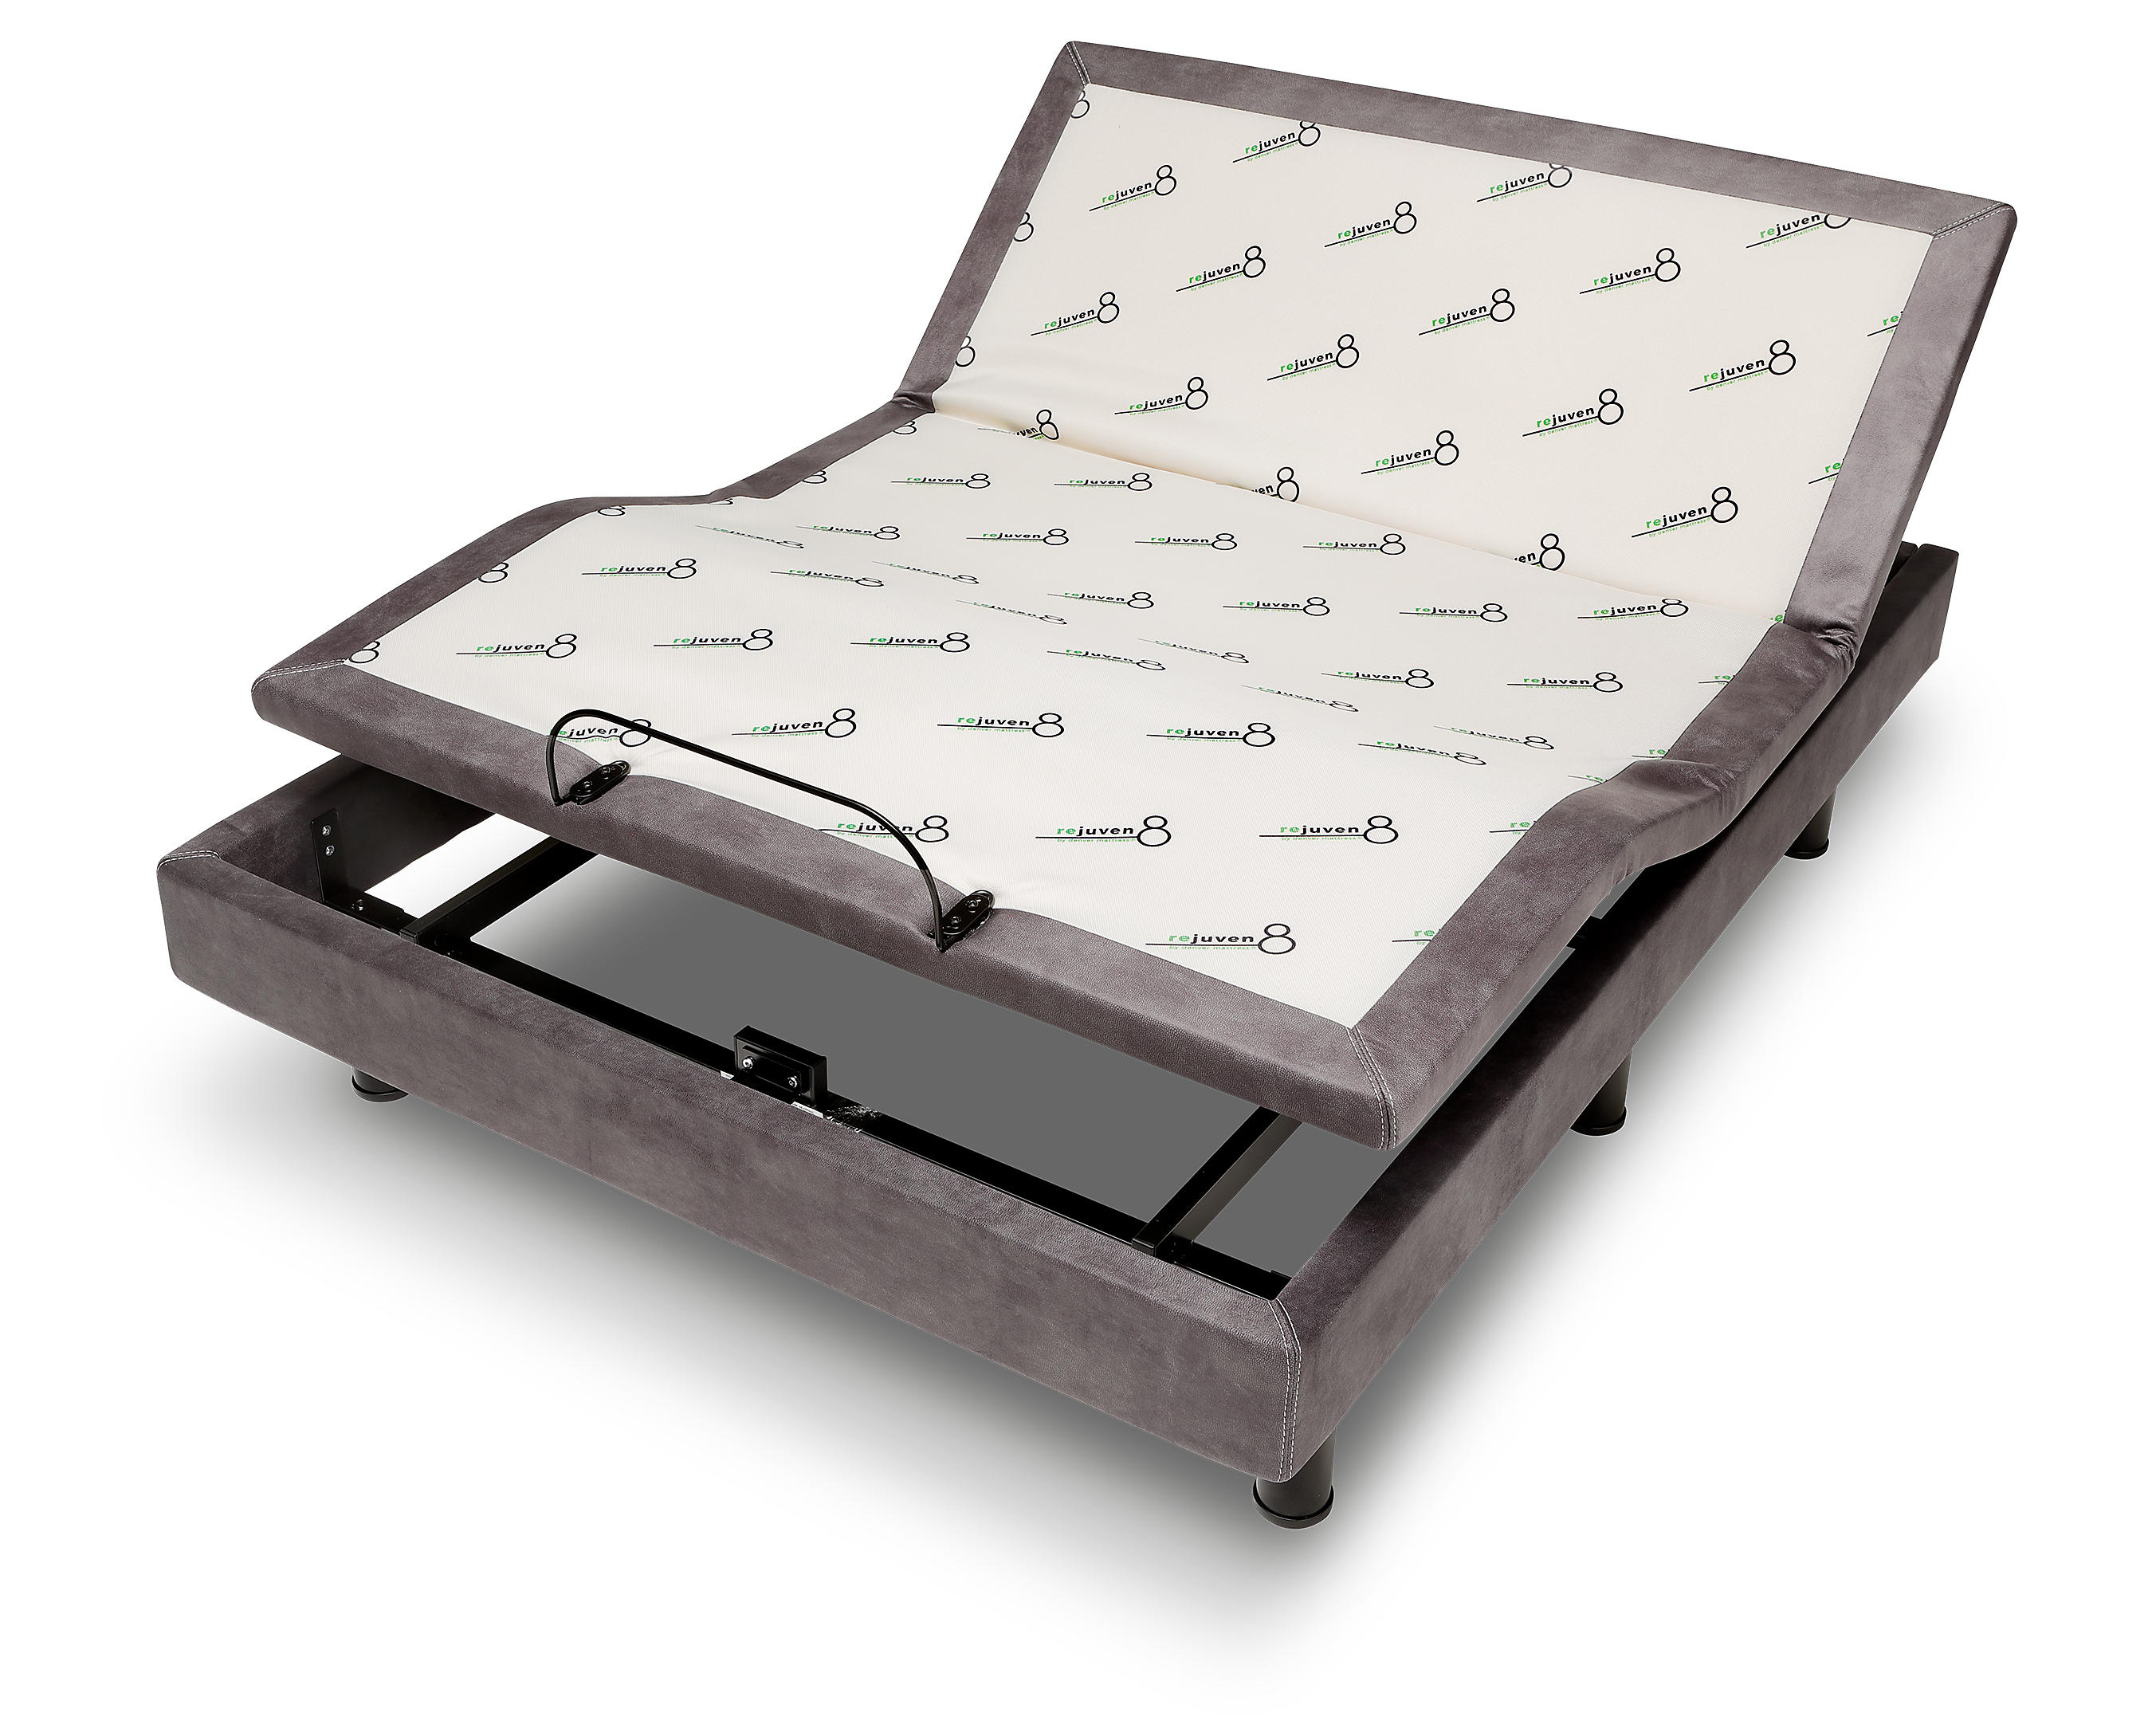 Rejuven8 3 0 Adjustable Bed Base, Adjustable Bed Frame Black Friday